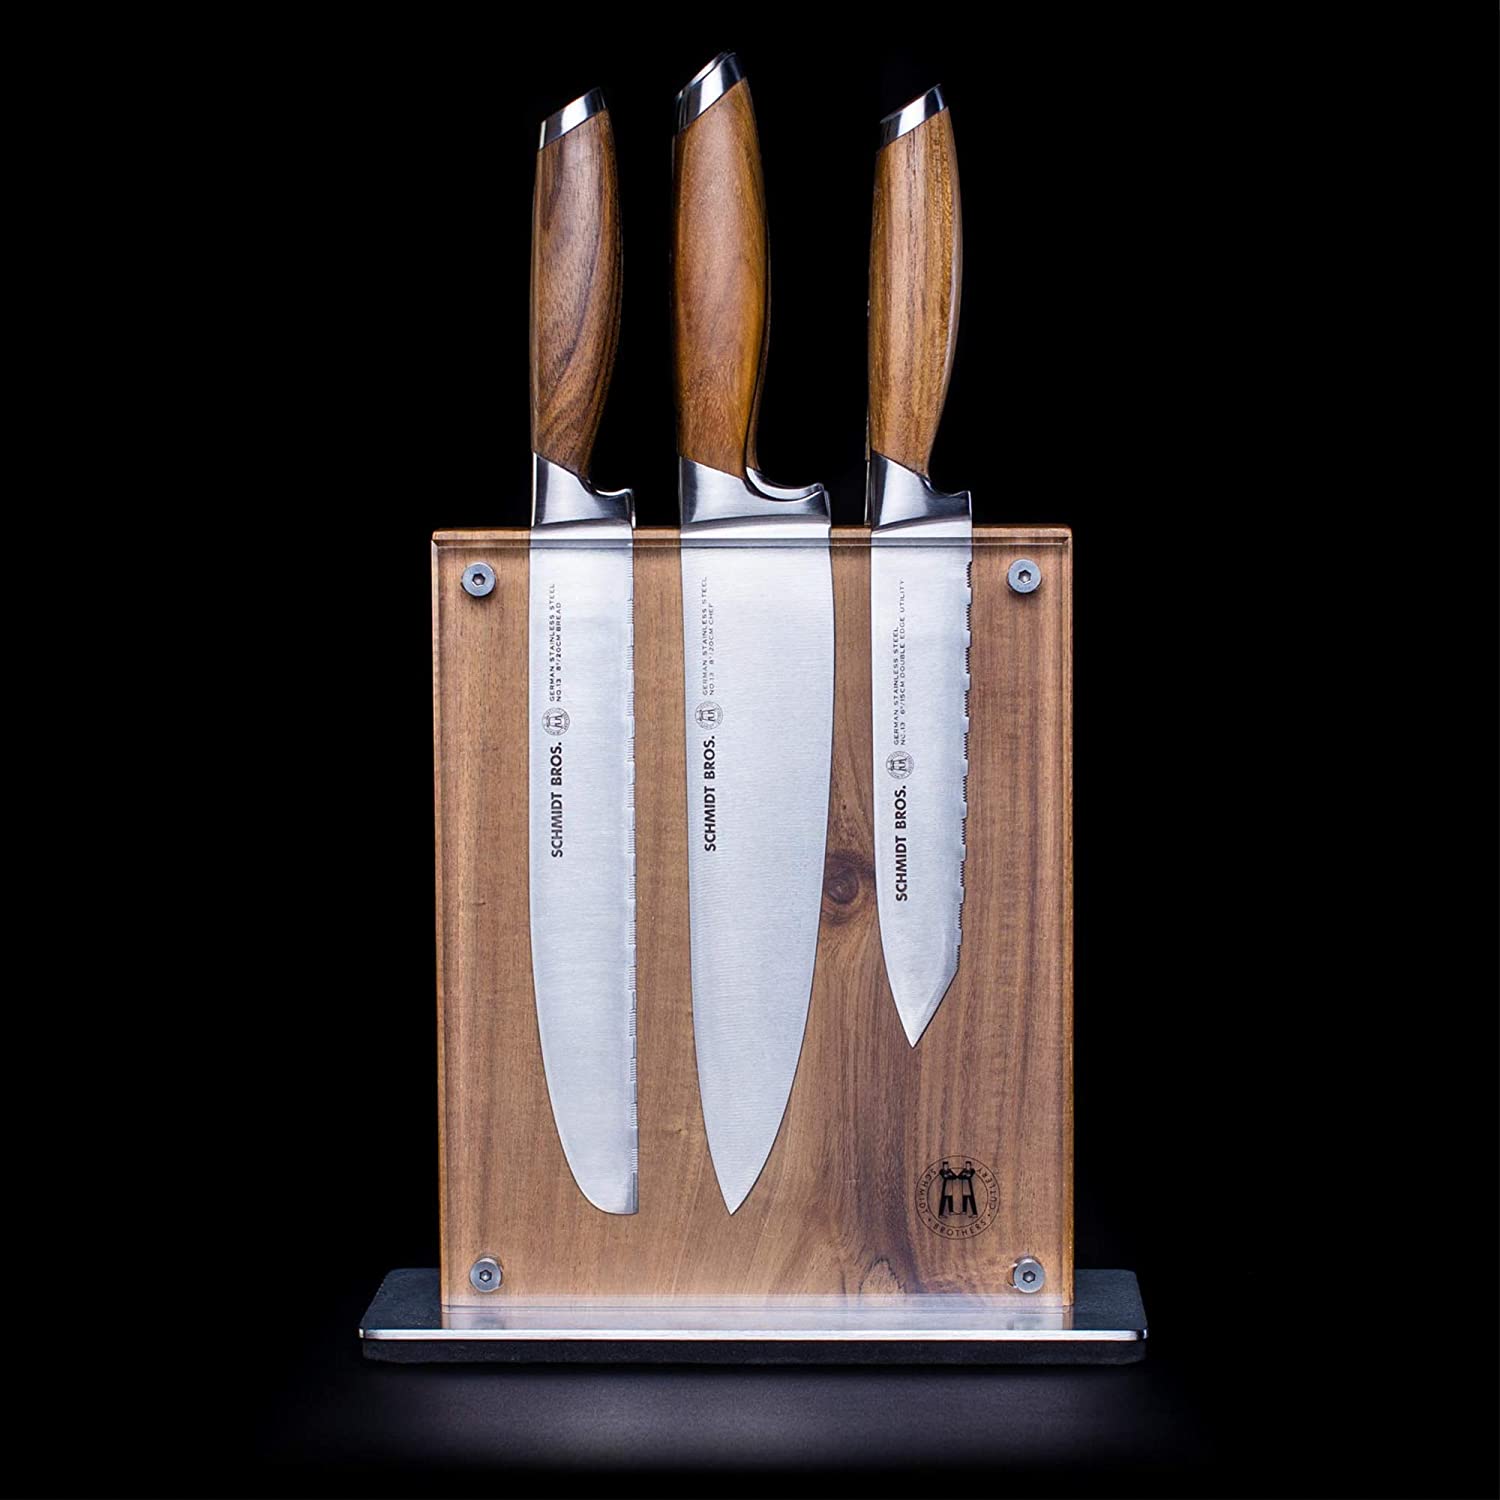 Schmidt Brothers - Bonded Teak, 15-Piece Knife Set, High-Carbon